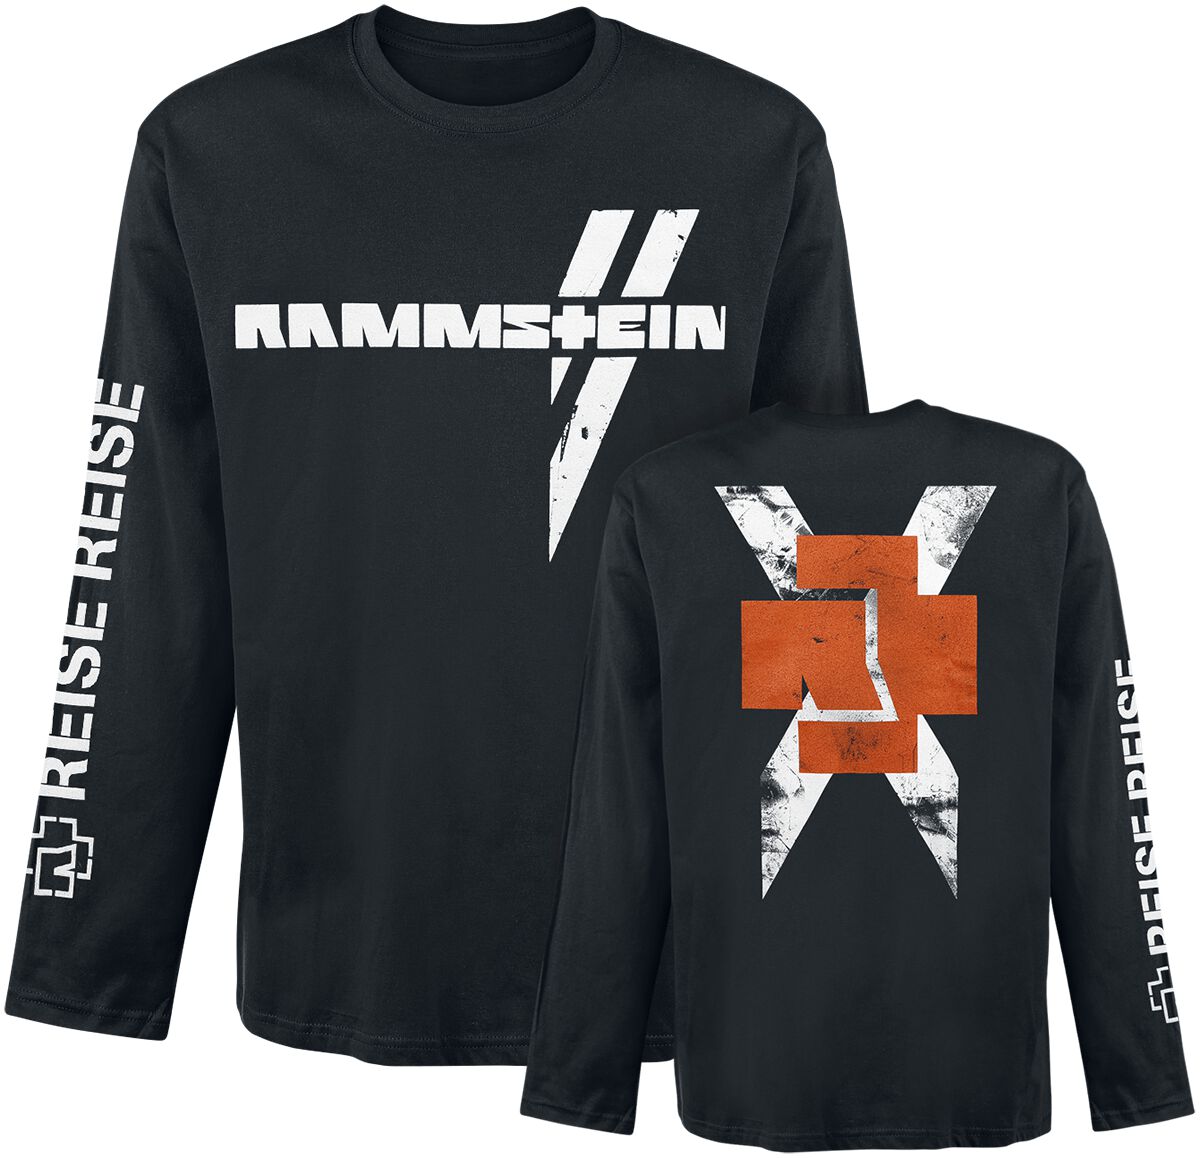 Rammstein Langarmshirt - Weißes Kreuz - M bis XL - für Männer - Größe L - schwarz  - Lizenziertes Merchandise!